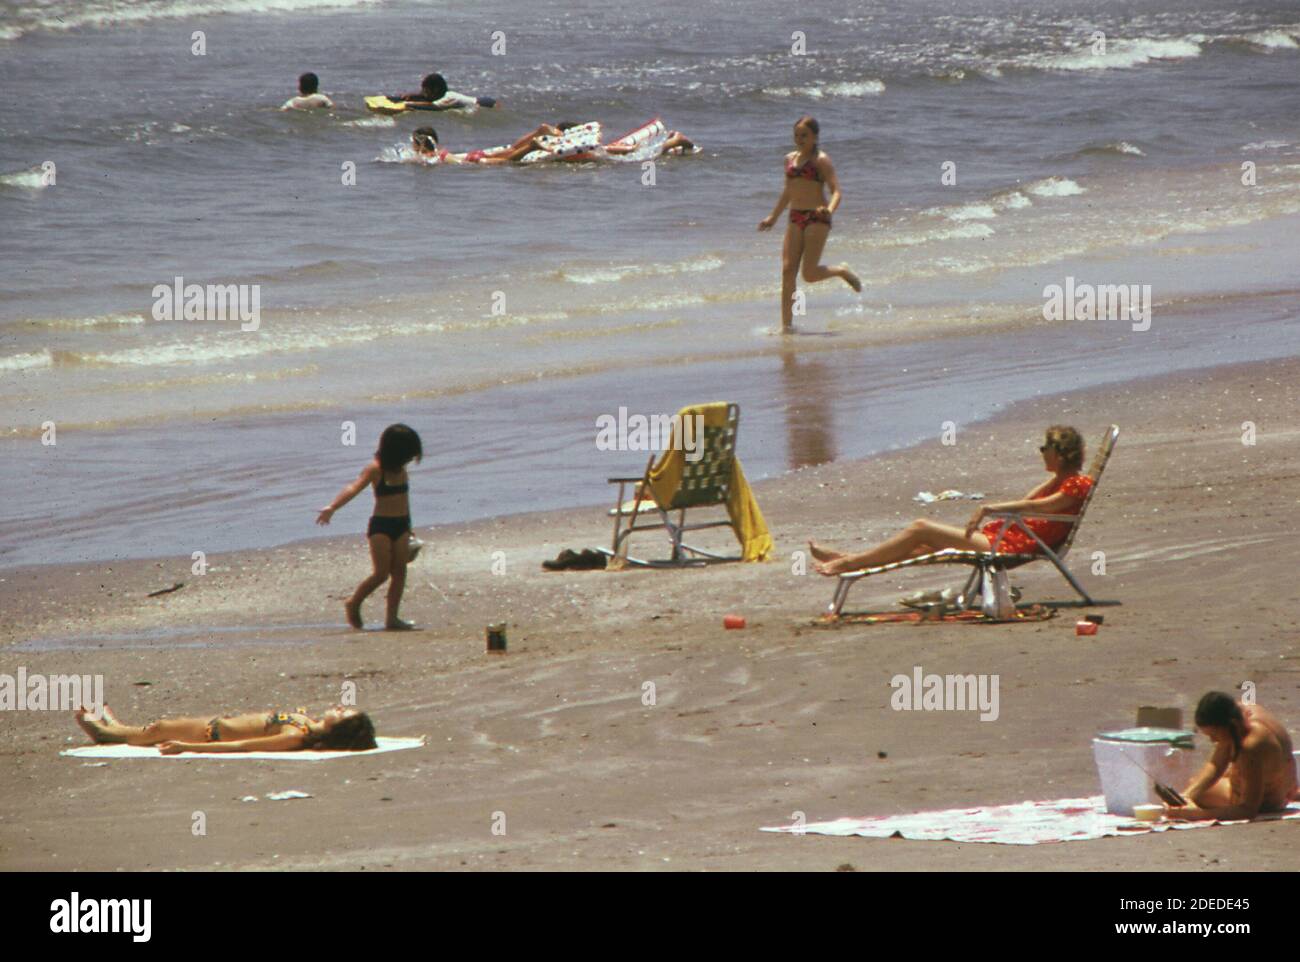 Foto der 1970er Jahre (1973) - Schwimmen im Golf von Mexiko von West Beach, Teil der langen Strecke der offenen Küste, die Galveston zu einem beliebten Golf Coast Resort macht Stockfoto